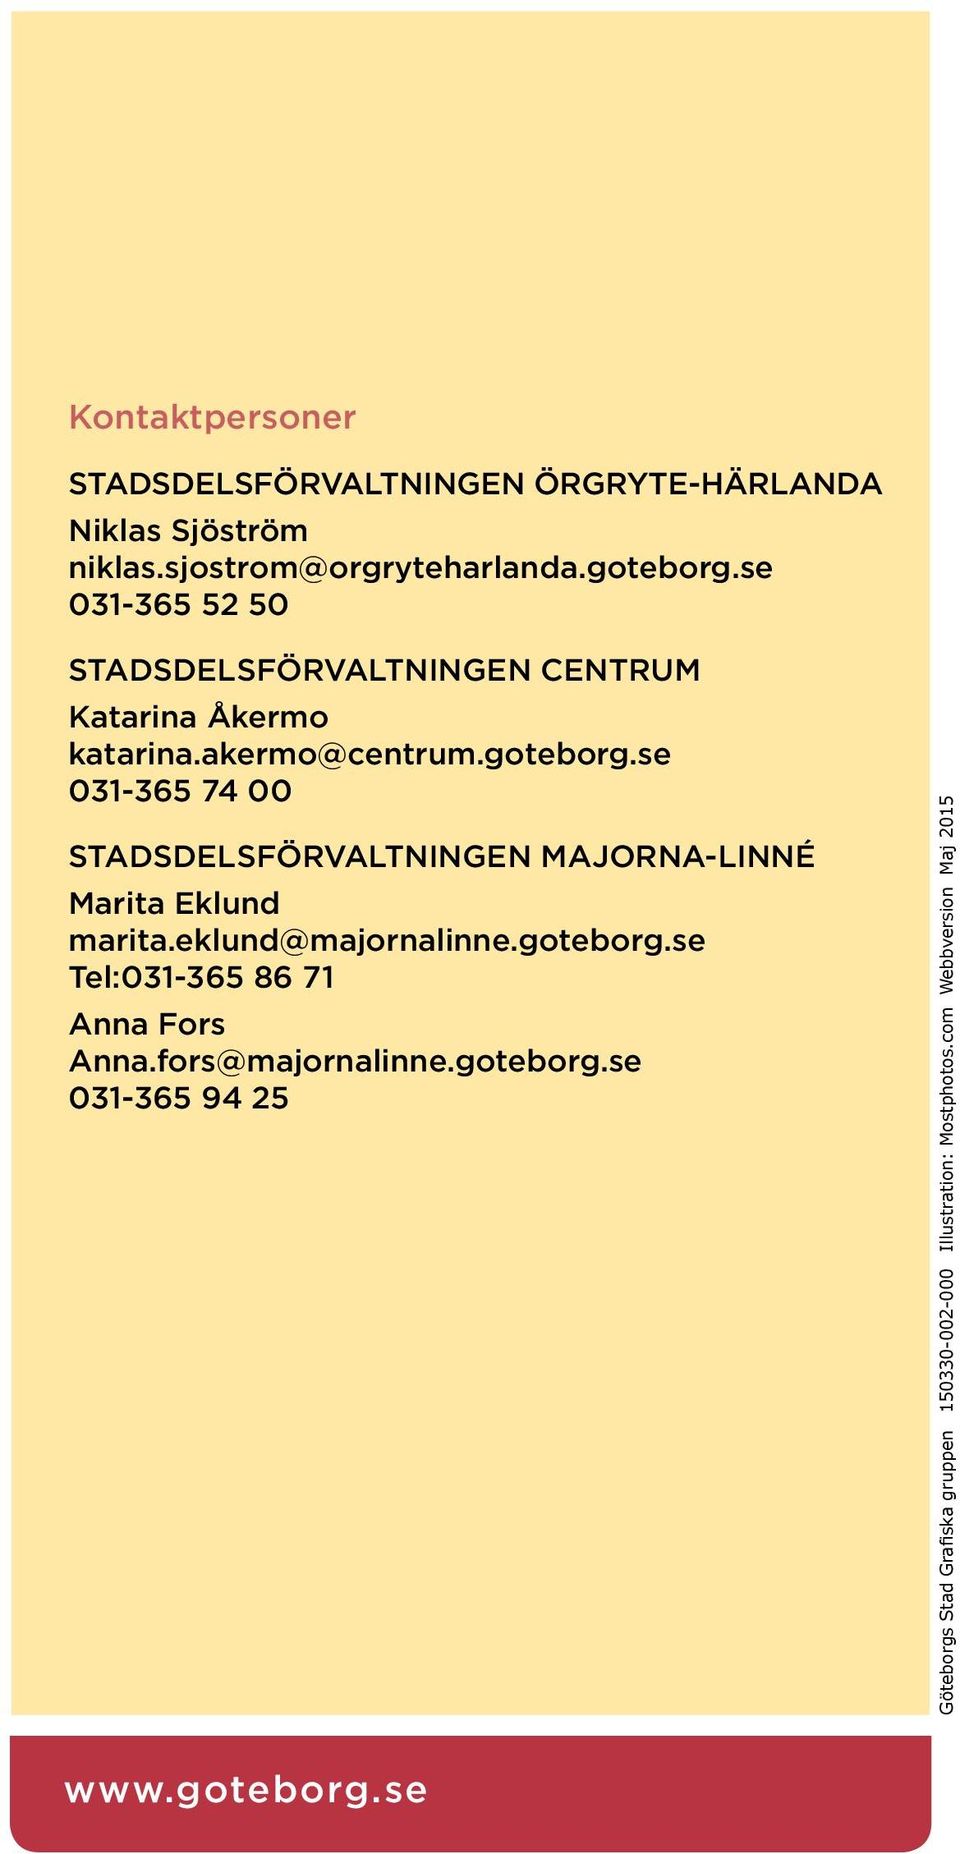 se 031-365 74 00 Stadsdelsförvaltningen Majorna-Linné Marita Eklund marita.eklund@majornalinne.goteborg.